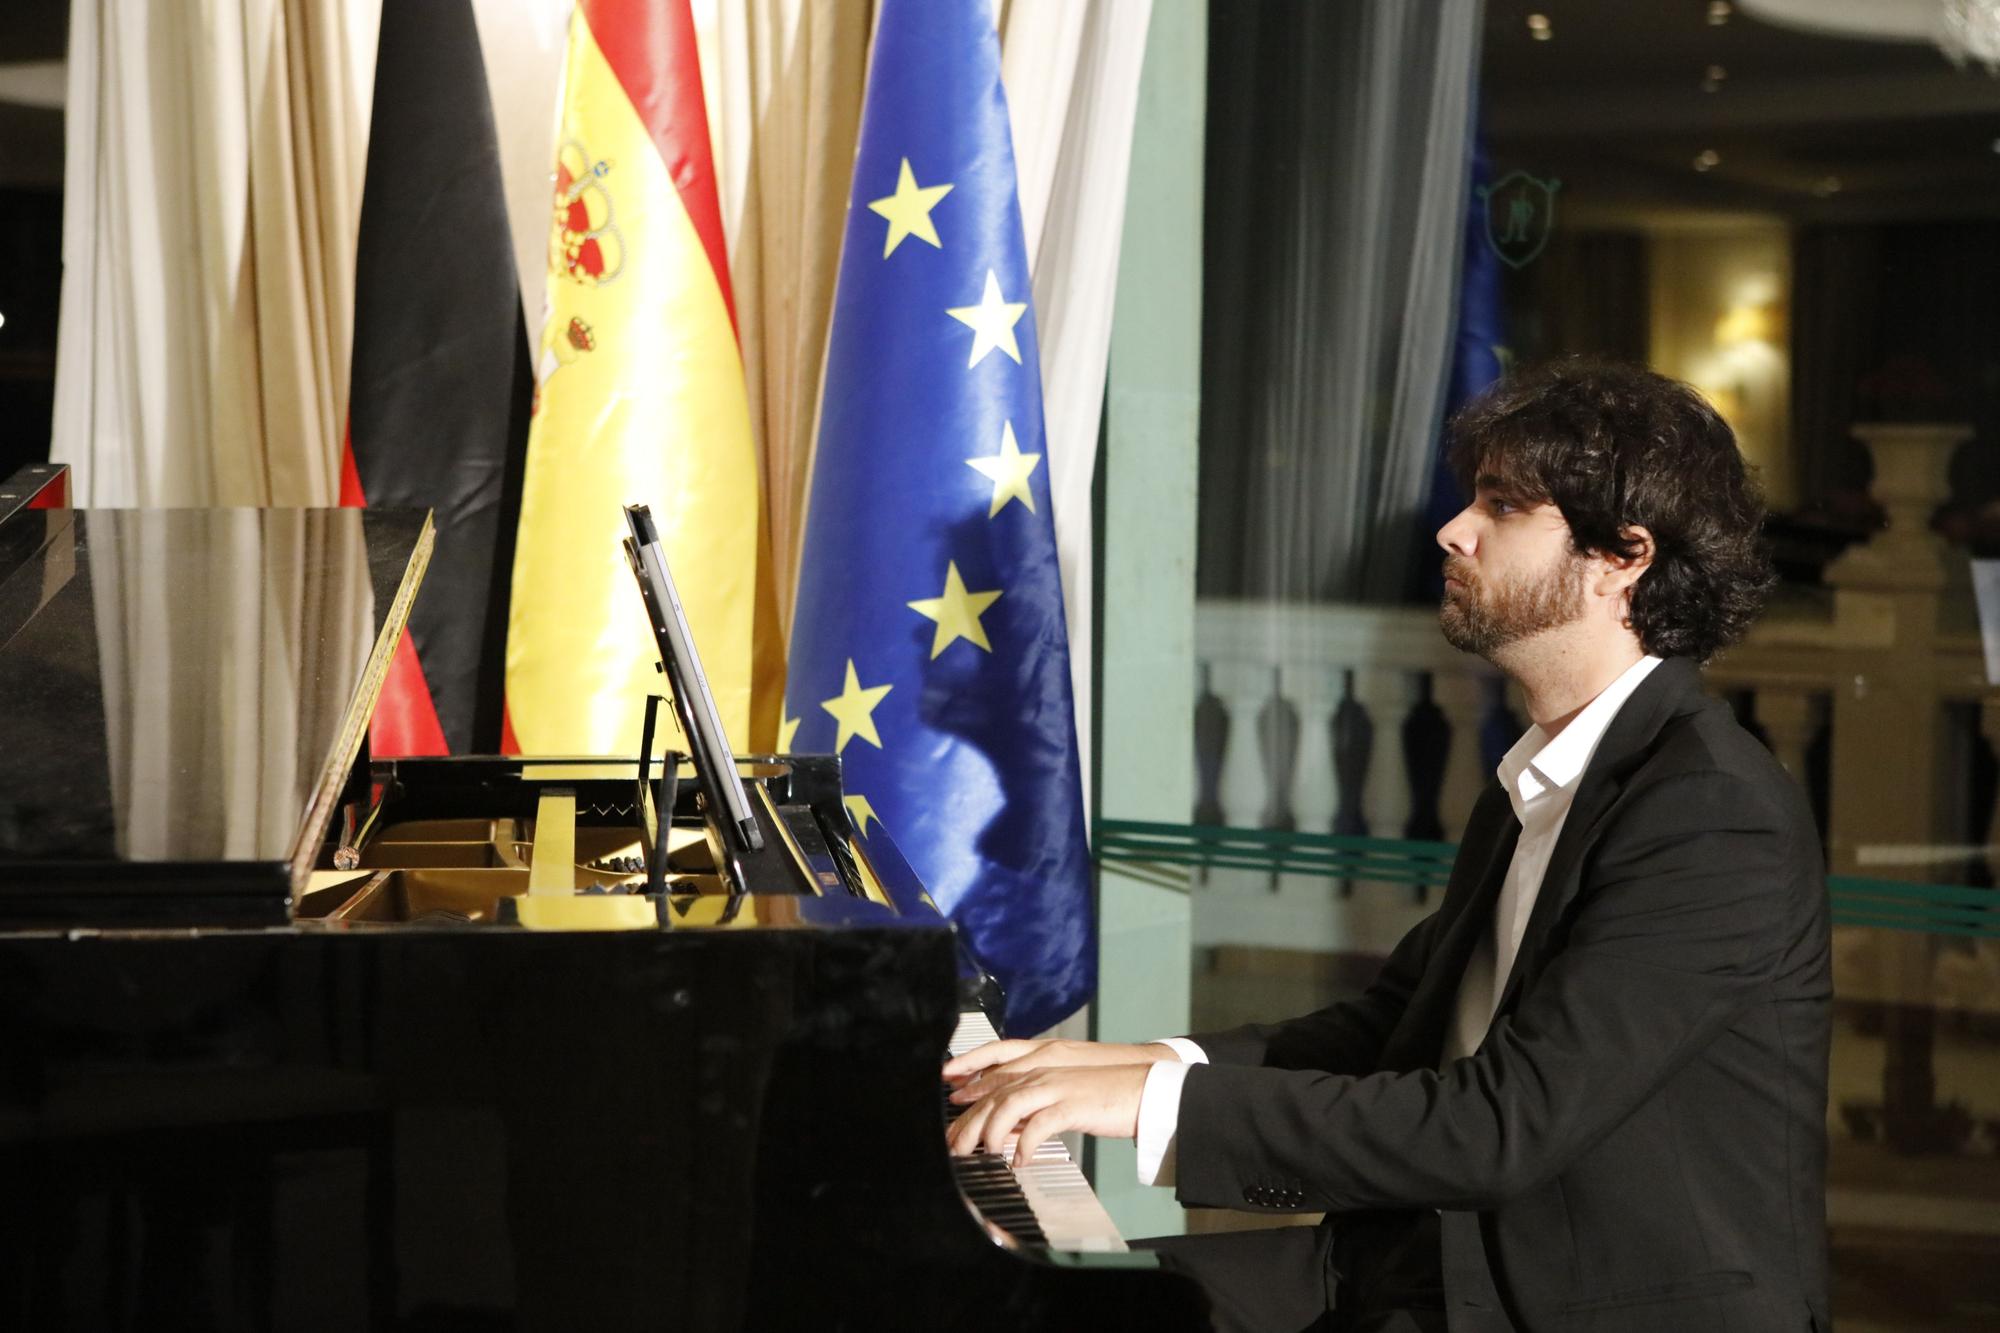 Der Tag der Deutschen Einheut wurde durch ein Konzert von Christian Benning und Magi Garcías symbolisch unterstrichen